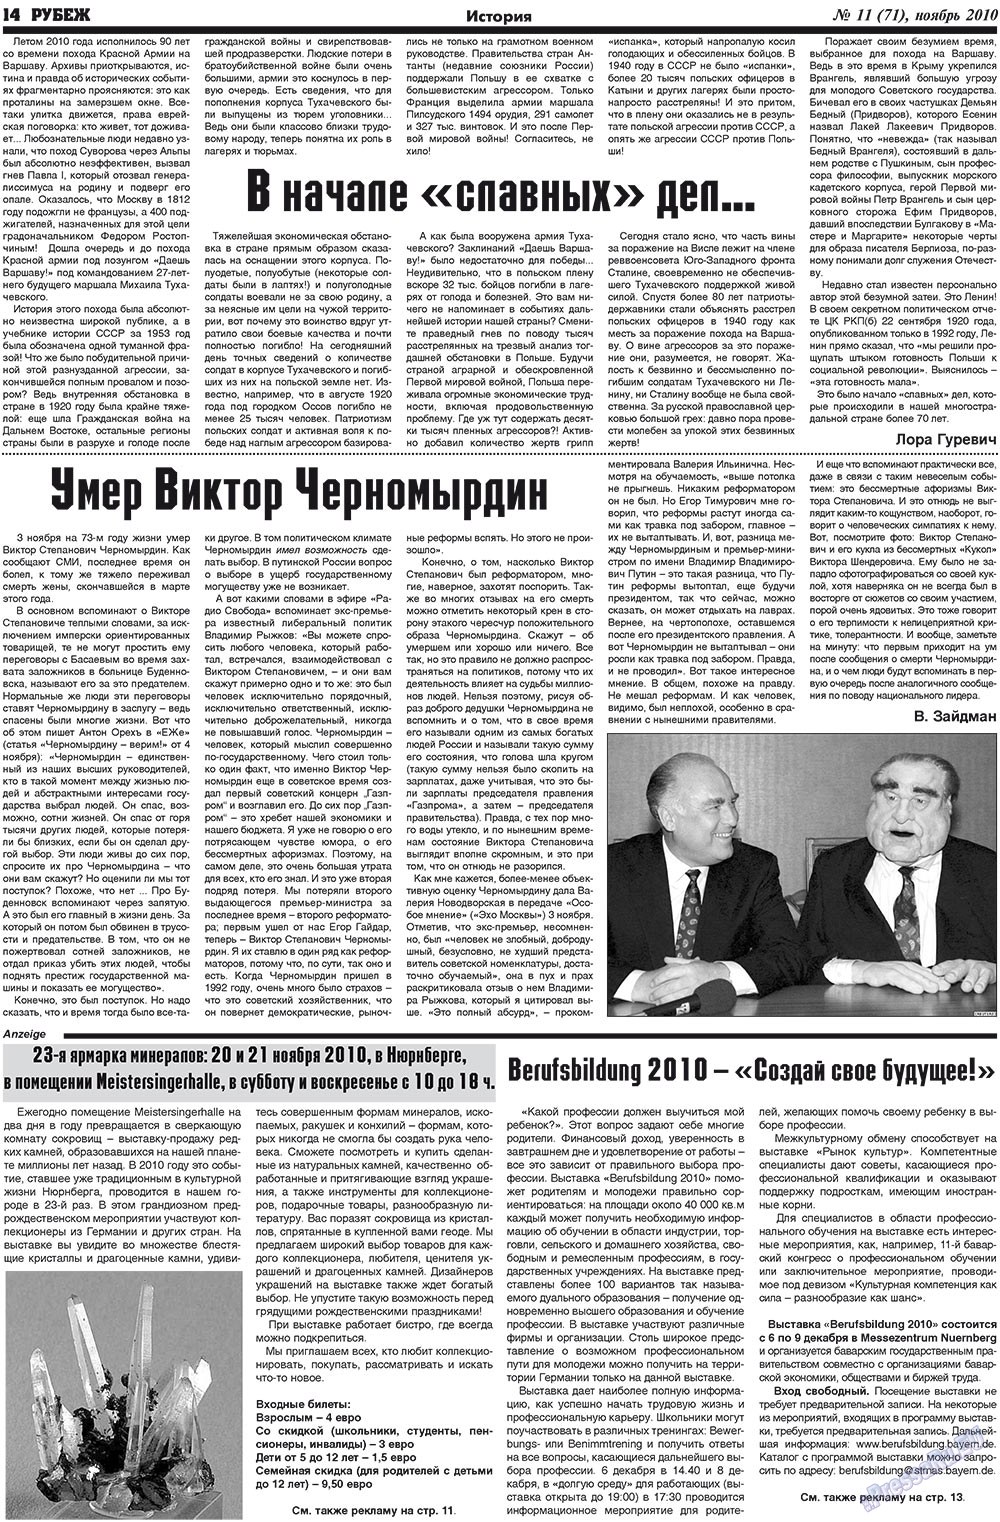 Рубеж (газета). 2010 год, номер 11, стр. 14